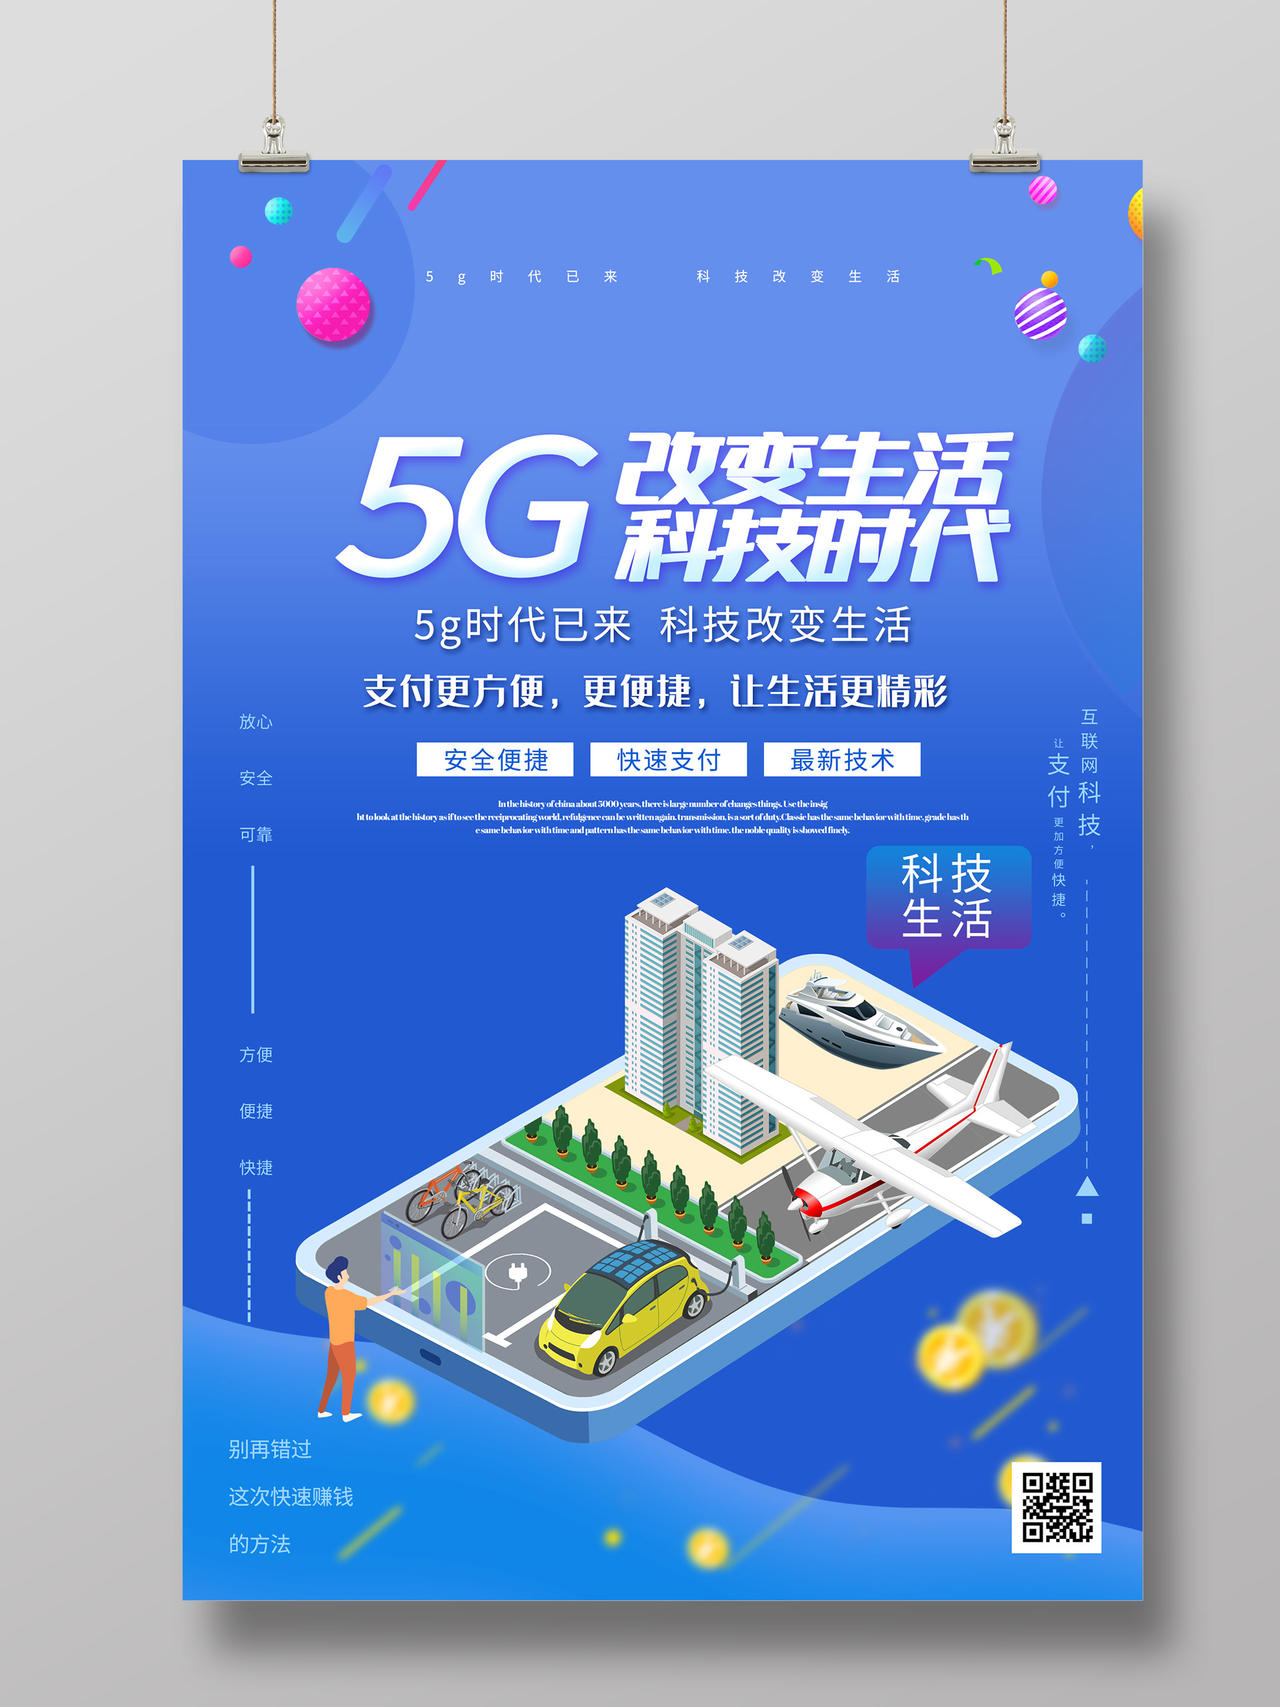 蓝色扁平风5G改变生活科技时代海报智能宽带